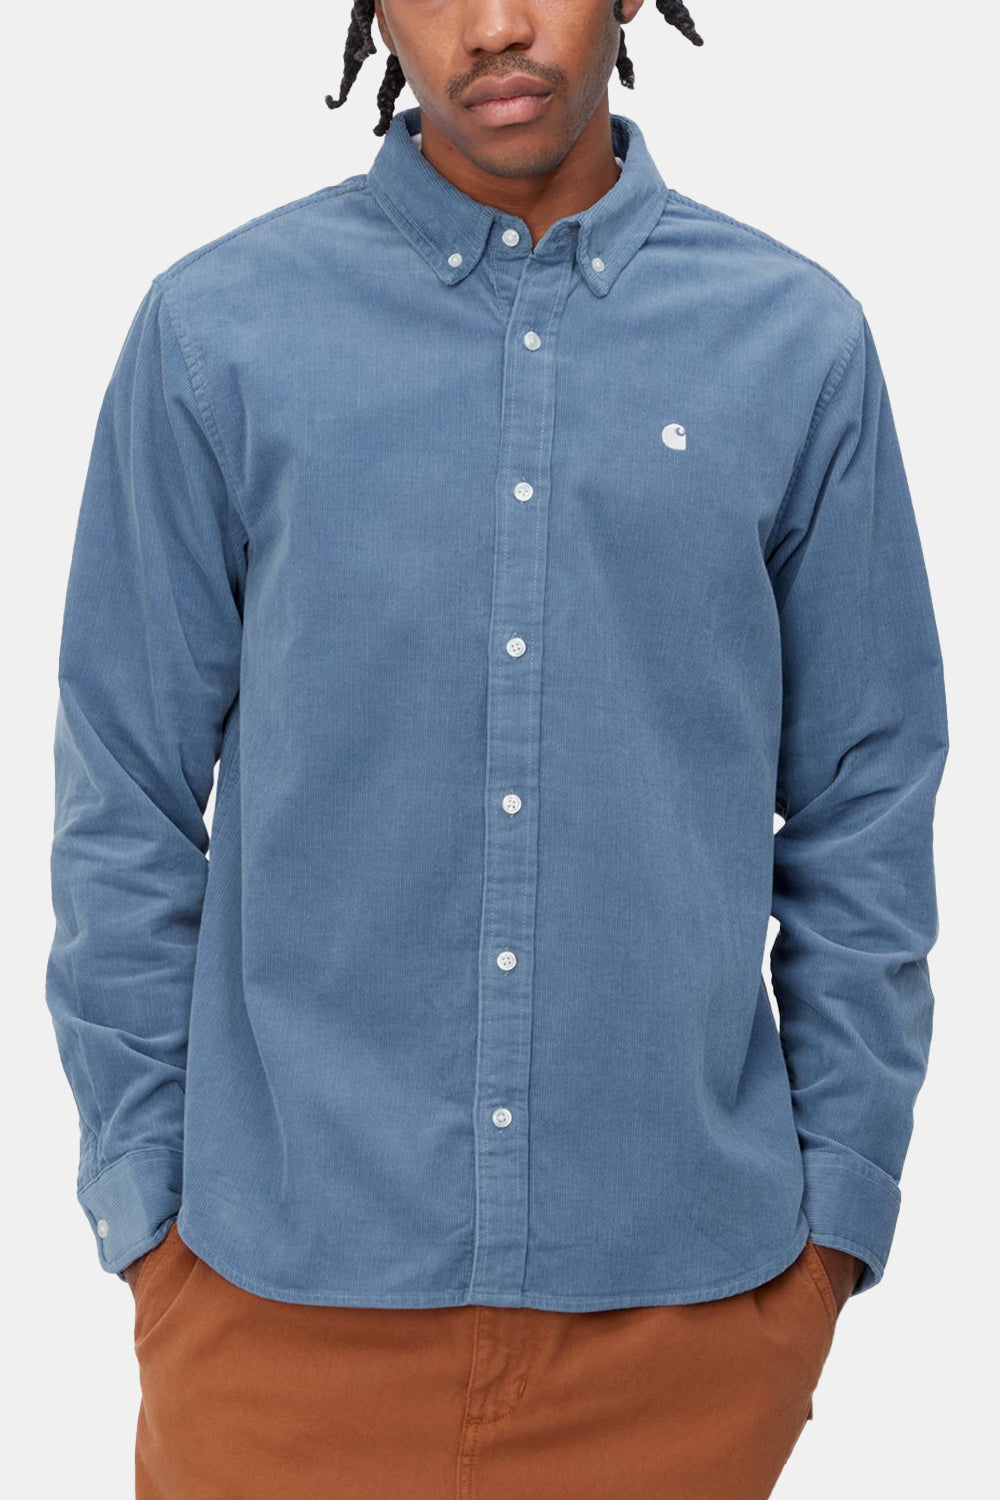 Carhartt WIP L/S Madison Fine Cord Shirt (Sorrent/Wax)